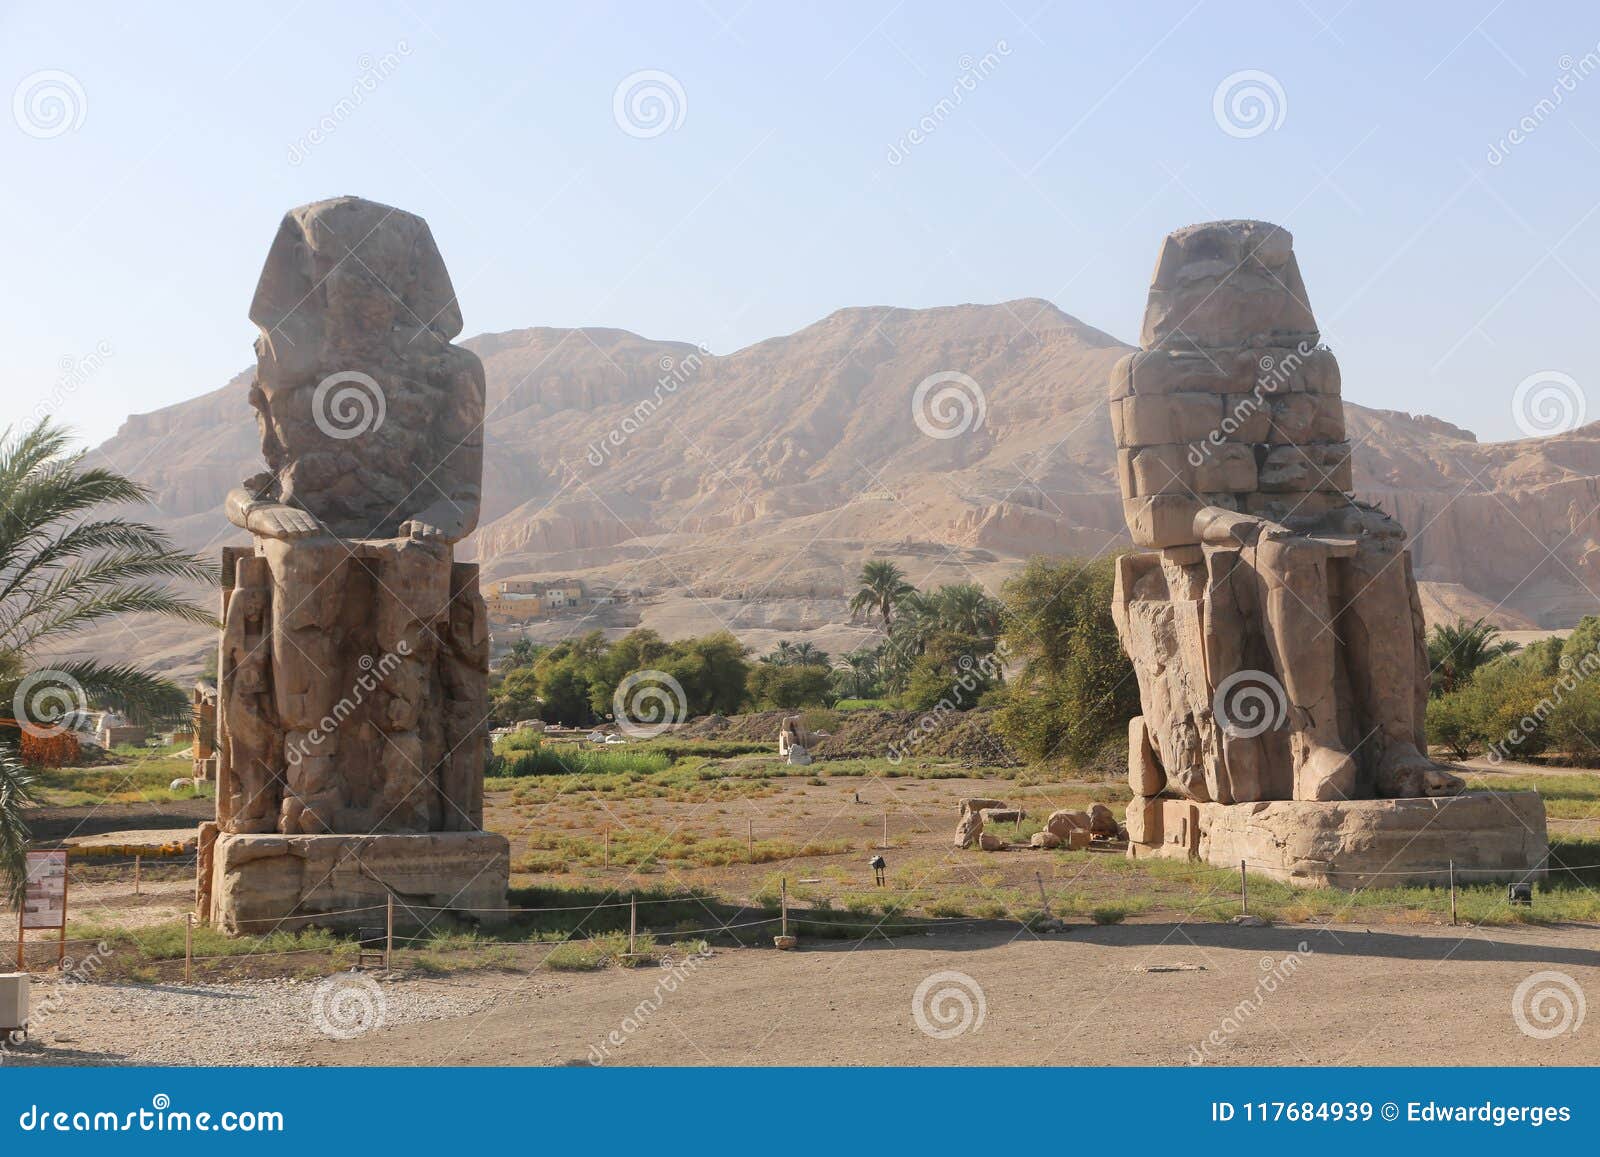 Αγάλματα Memnon. Αγάλματα άποψης ημέρας Memnon σε Luxor, Αίγυπτος